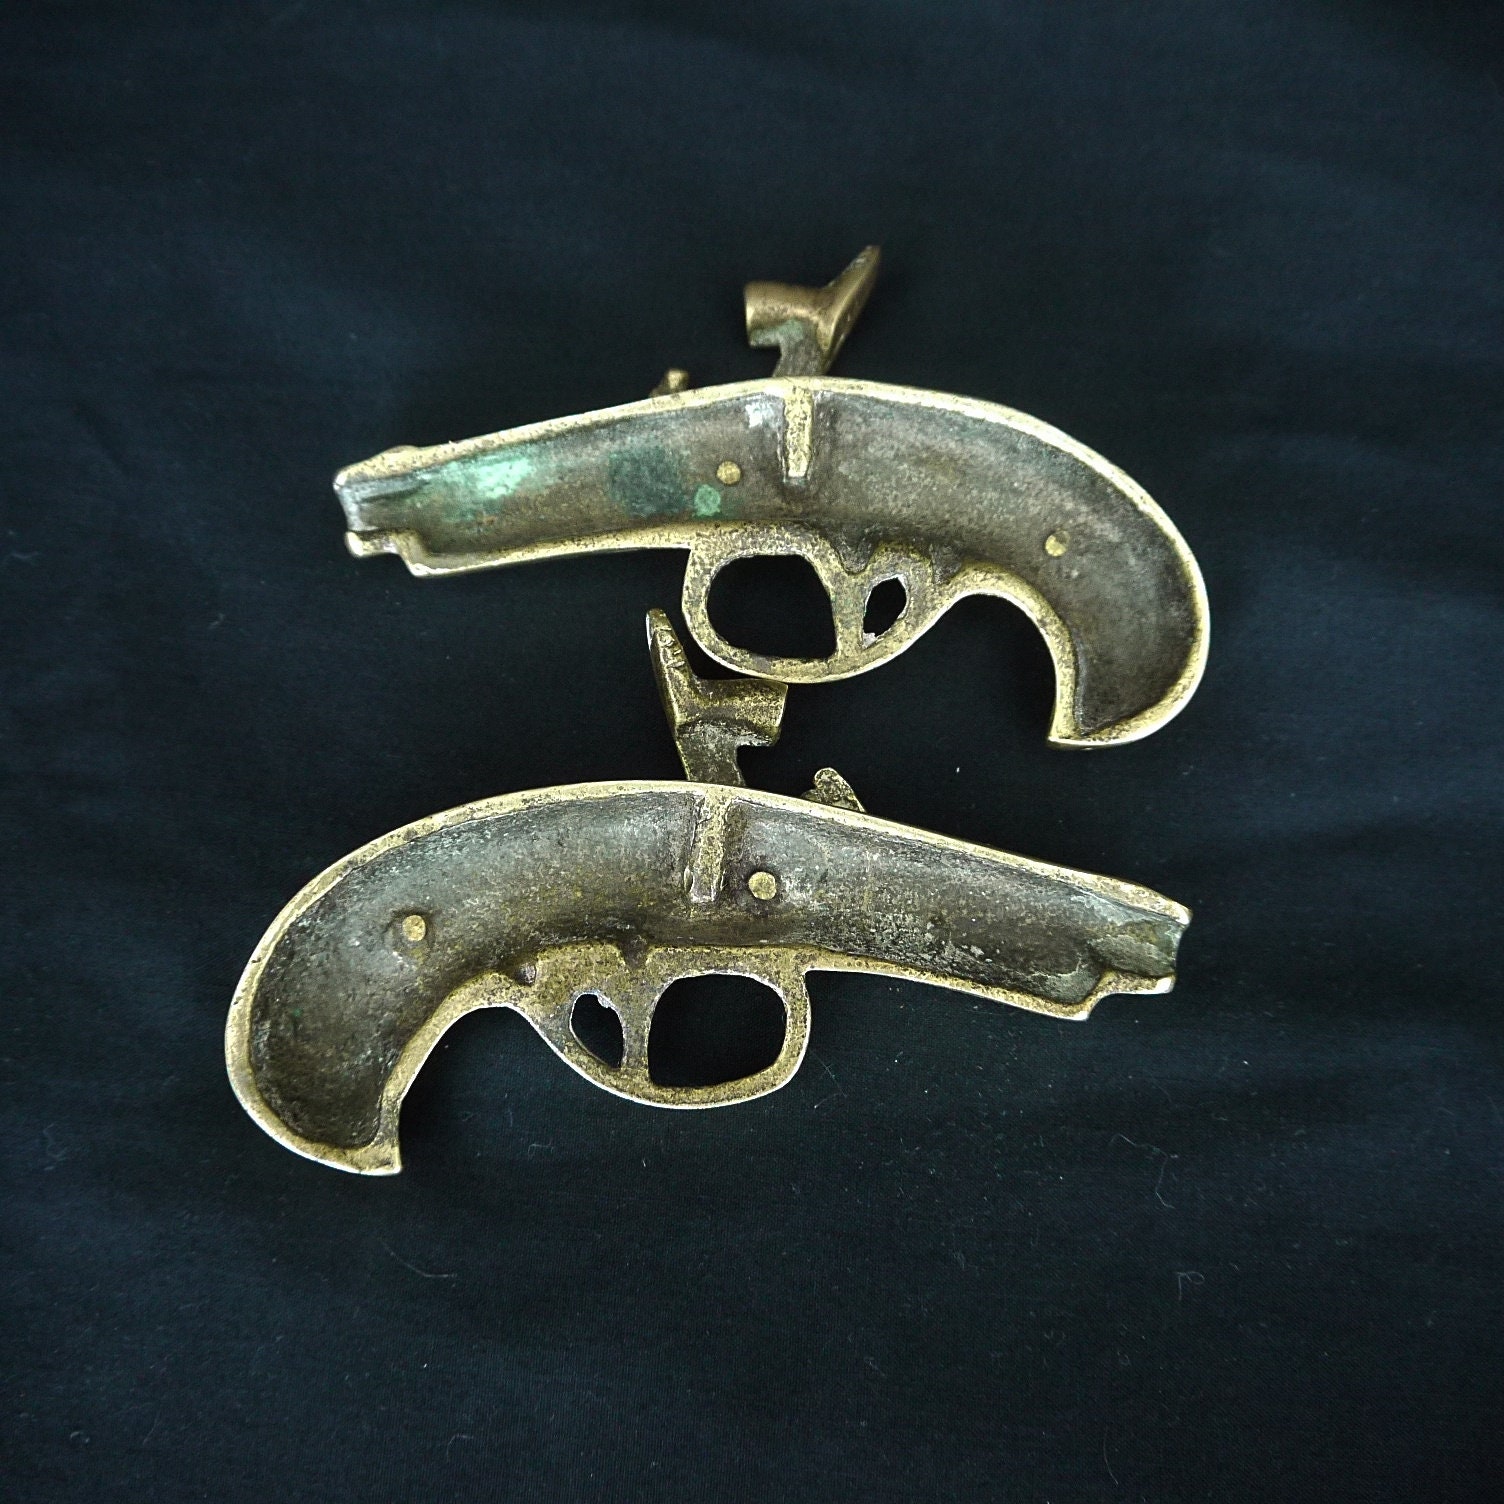 Vintage pistol wall hanging, brass metal revolver gun wall decor, retro  revolver